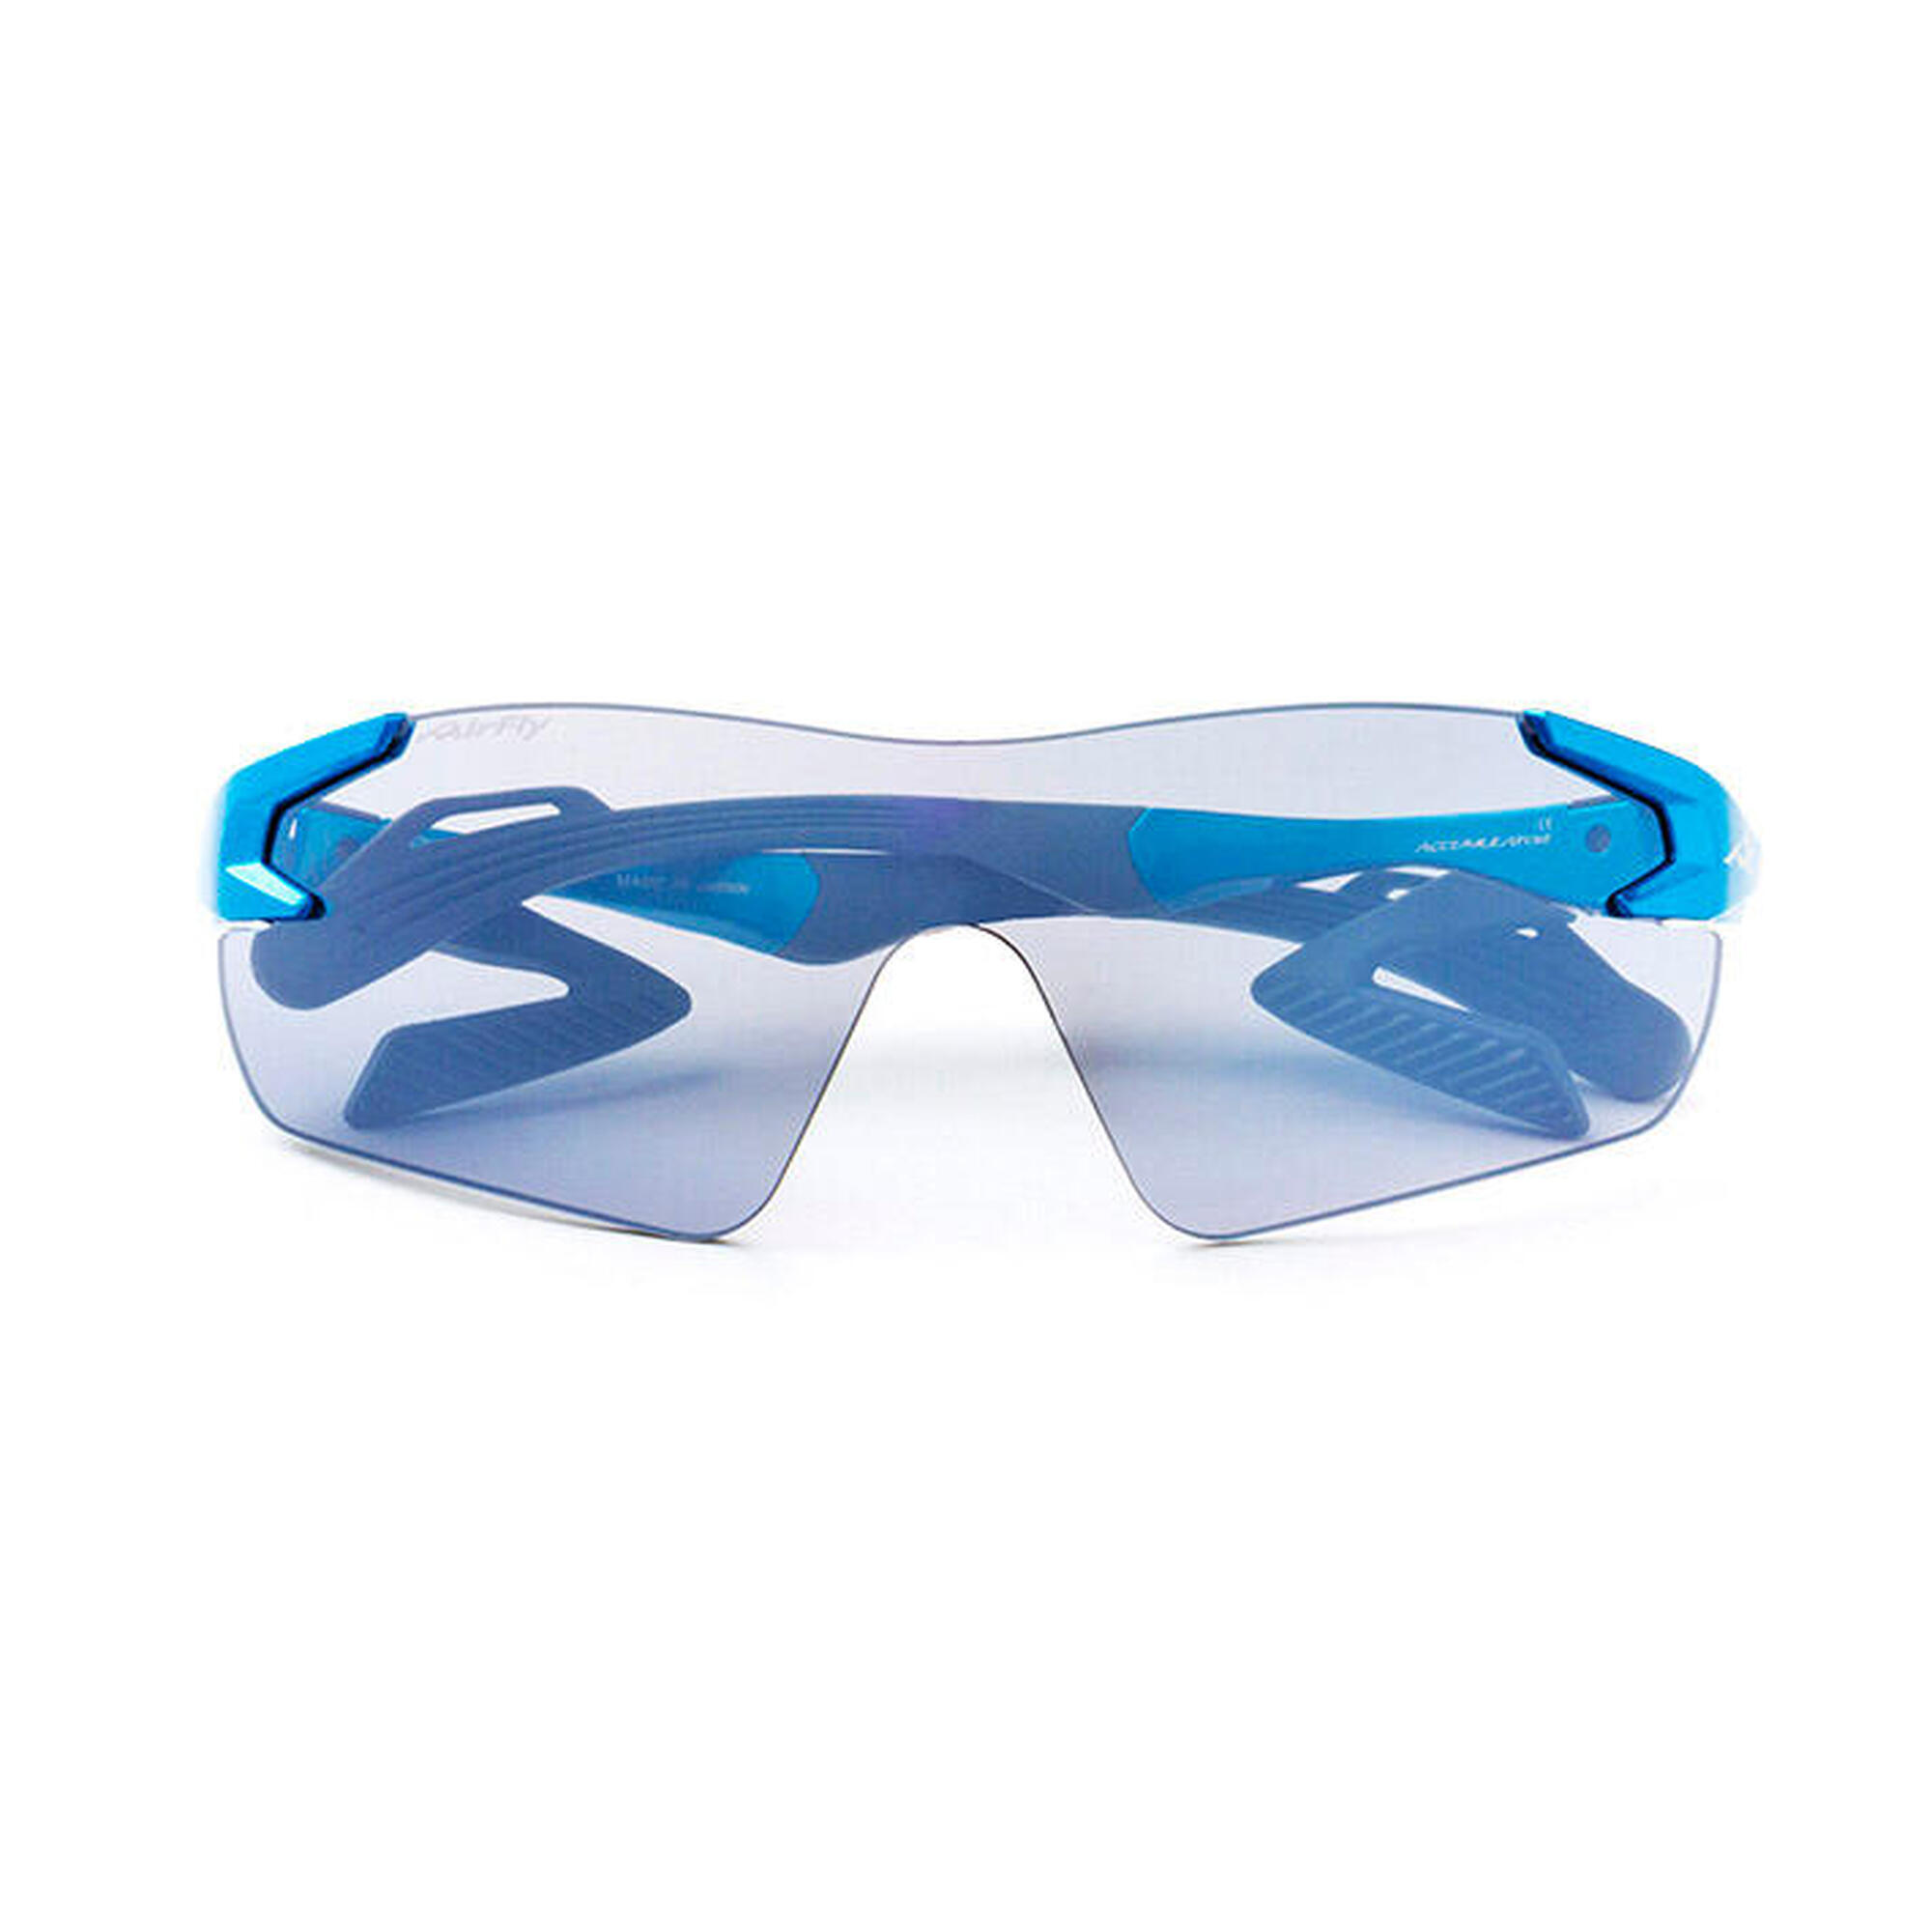 AF-301 C-35 Mirror Lens Sunglasses - Aqua Blue